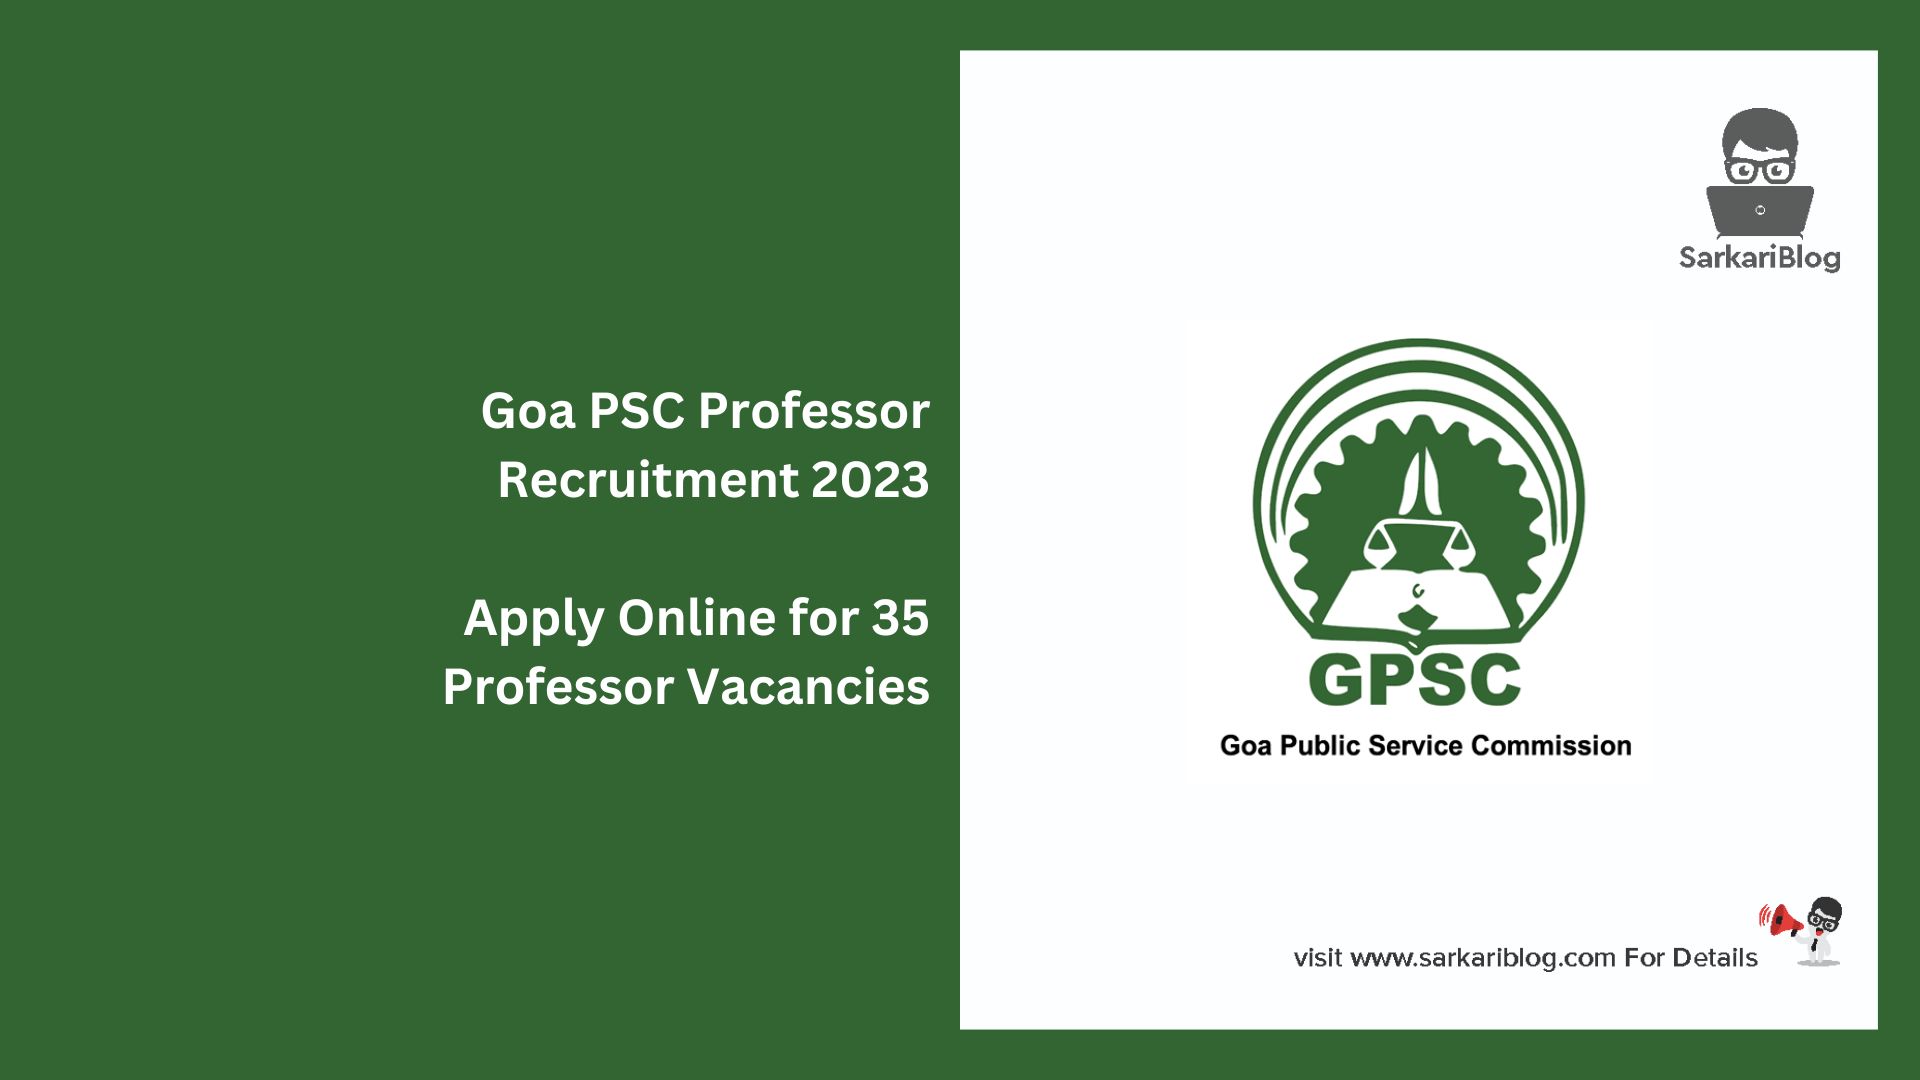 Goa PSC Professor Recruitment 2023